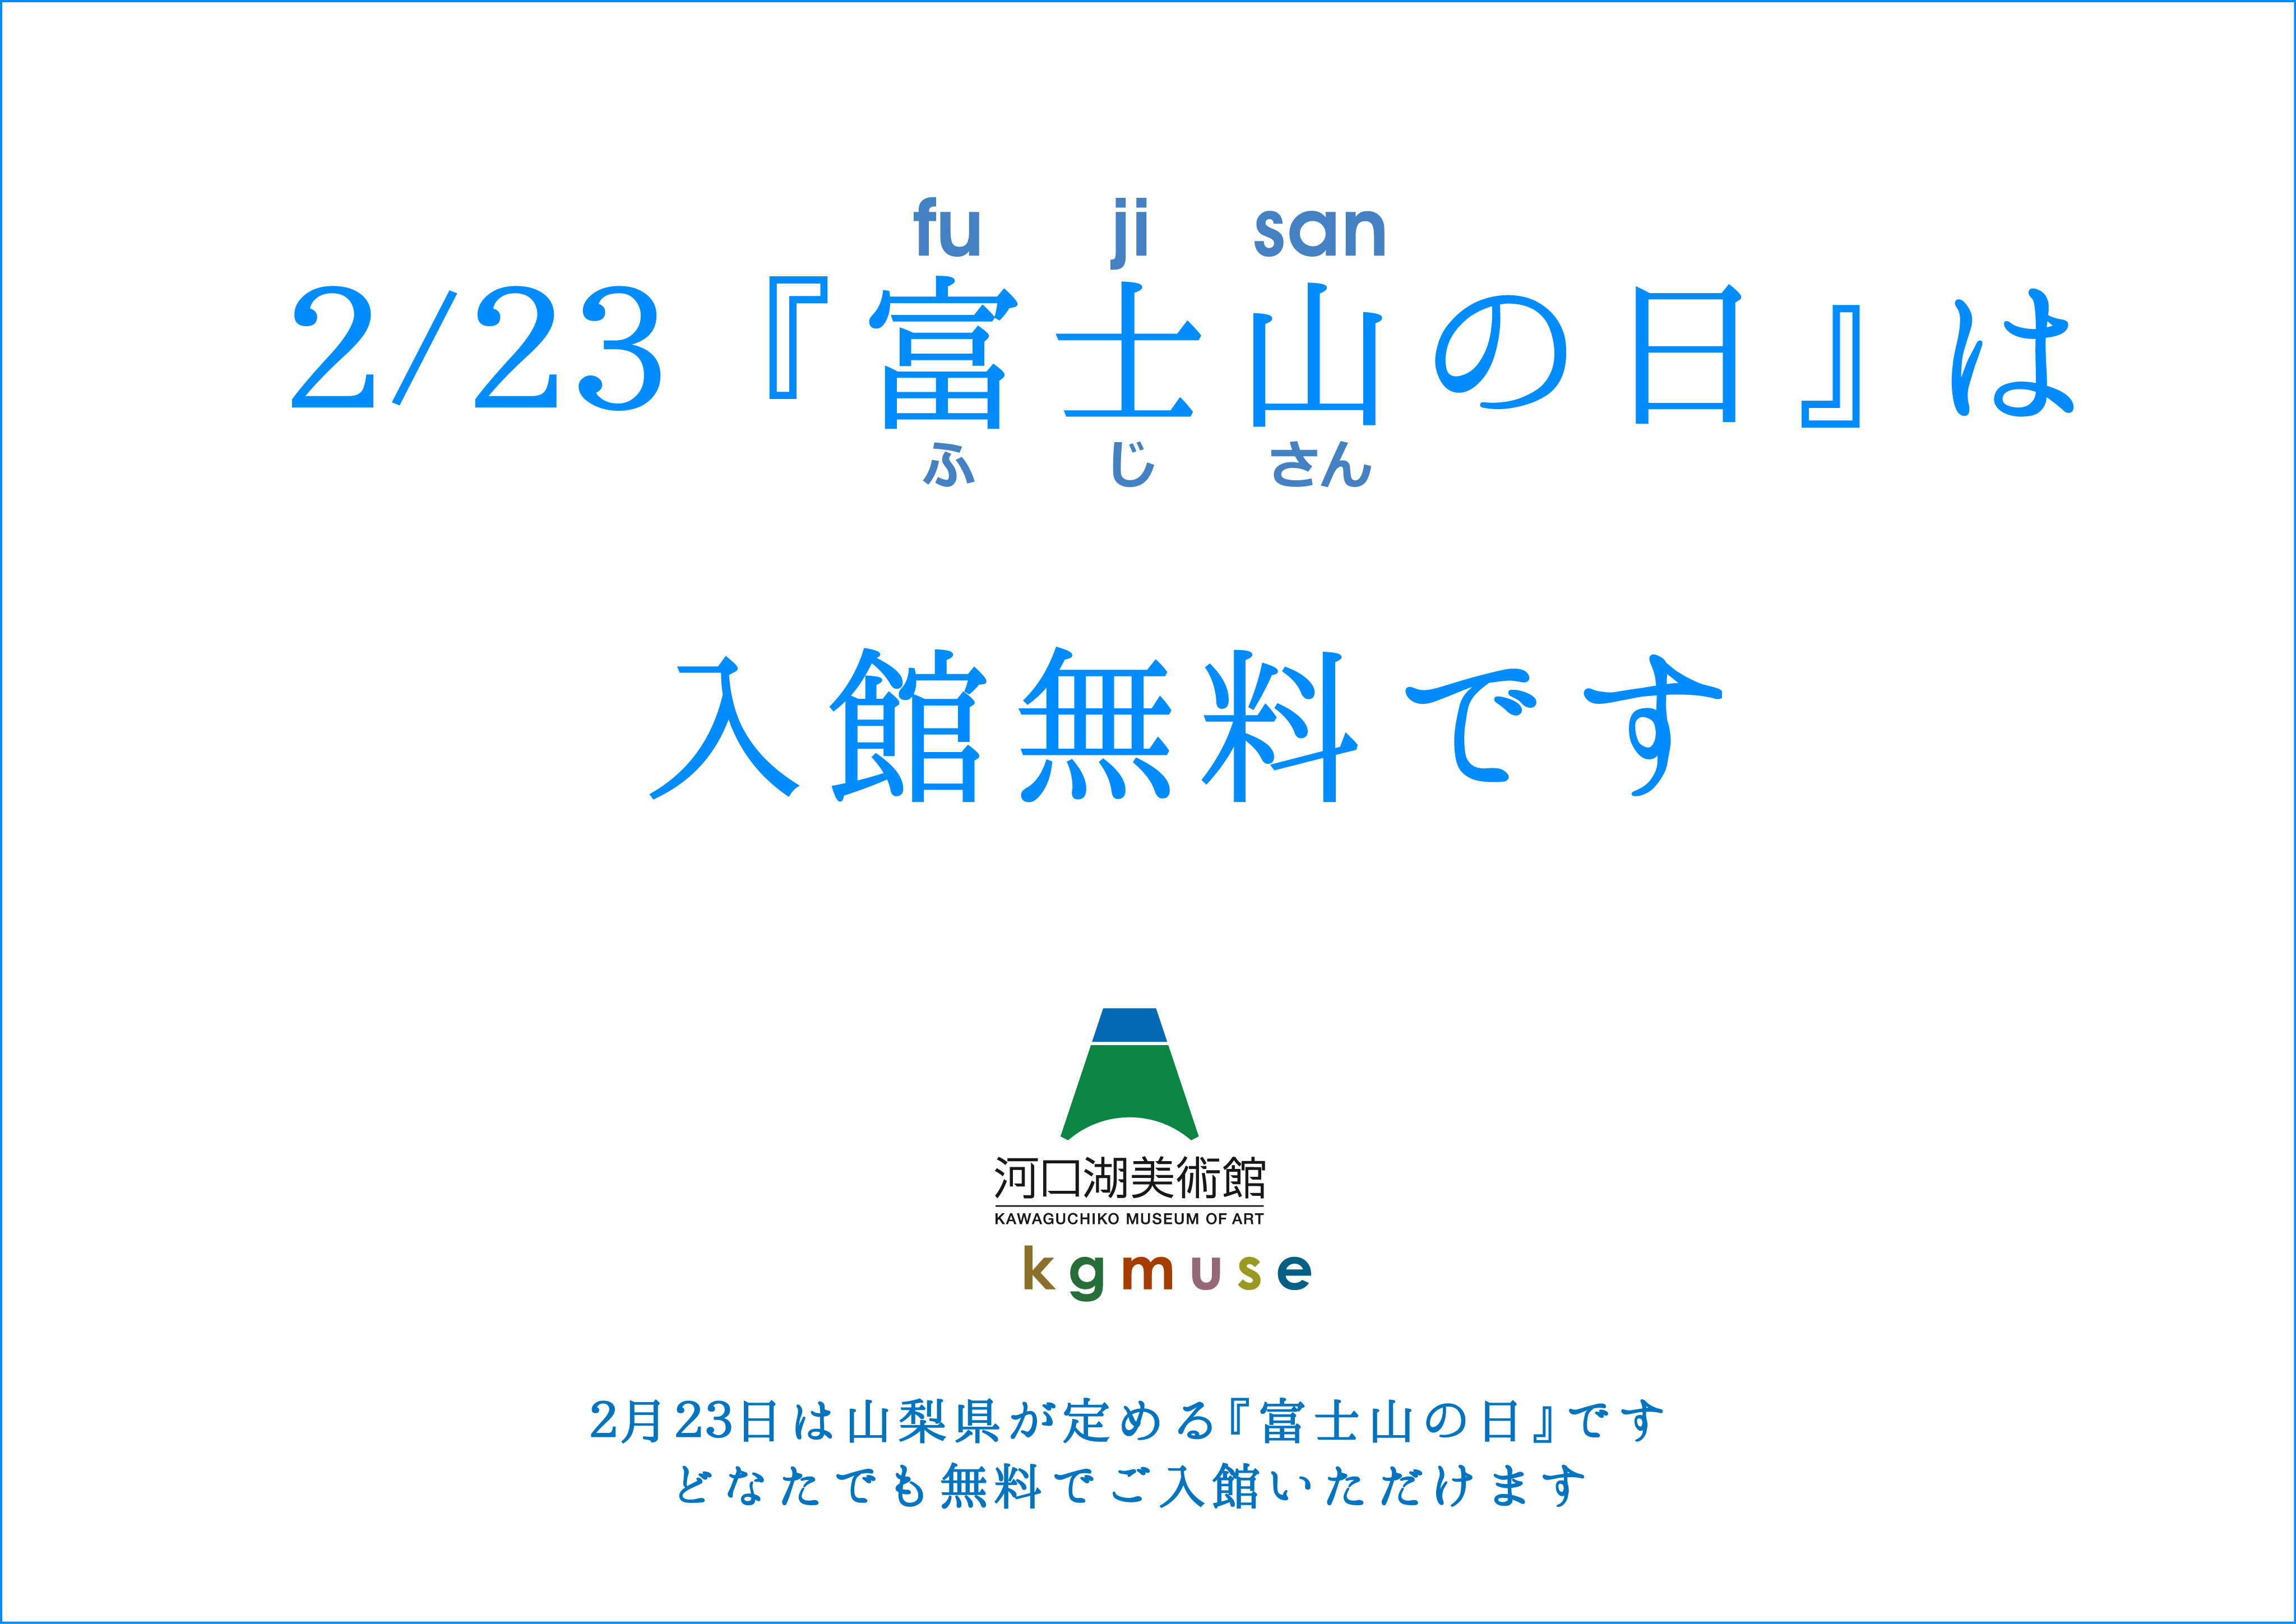 ☆2/23『富士山の日』は入館無料です。